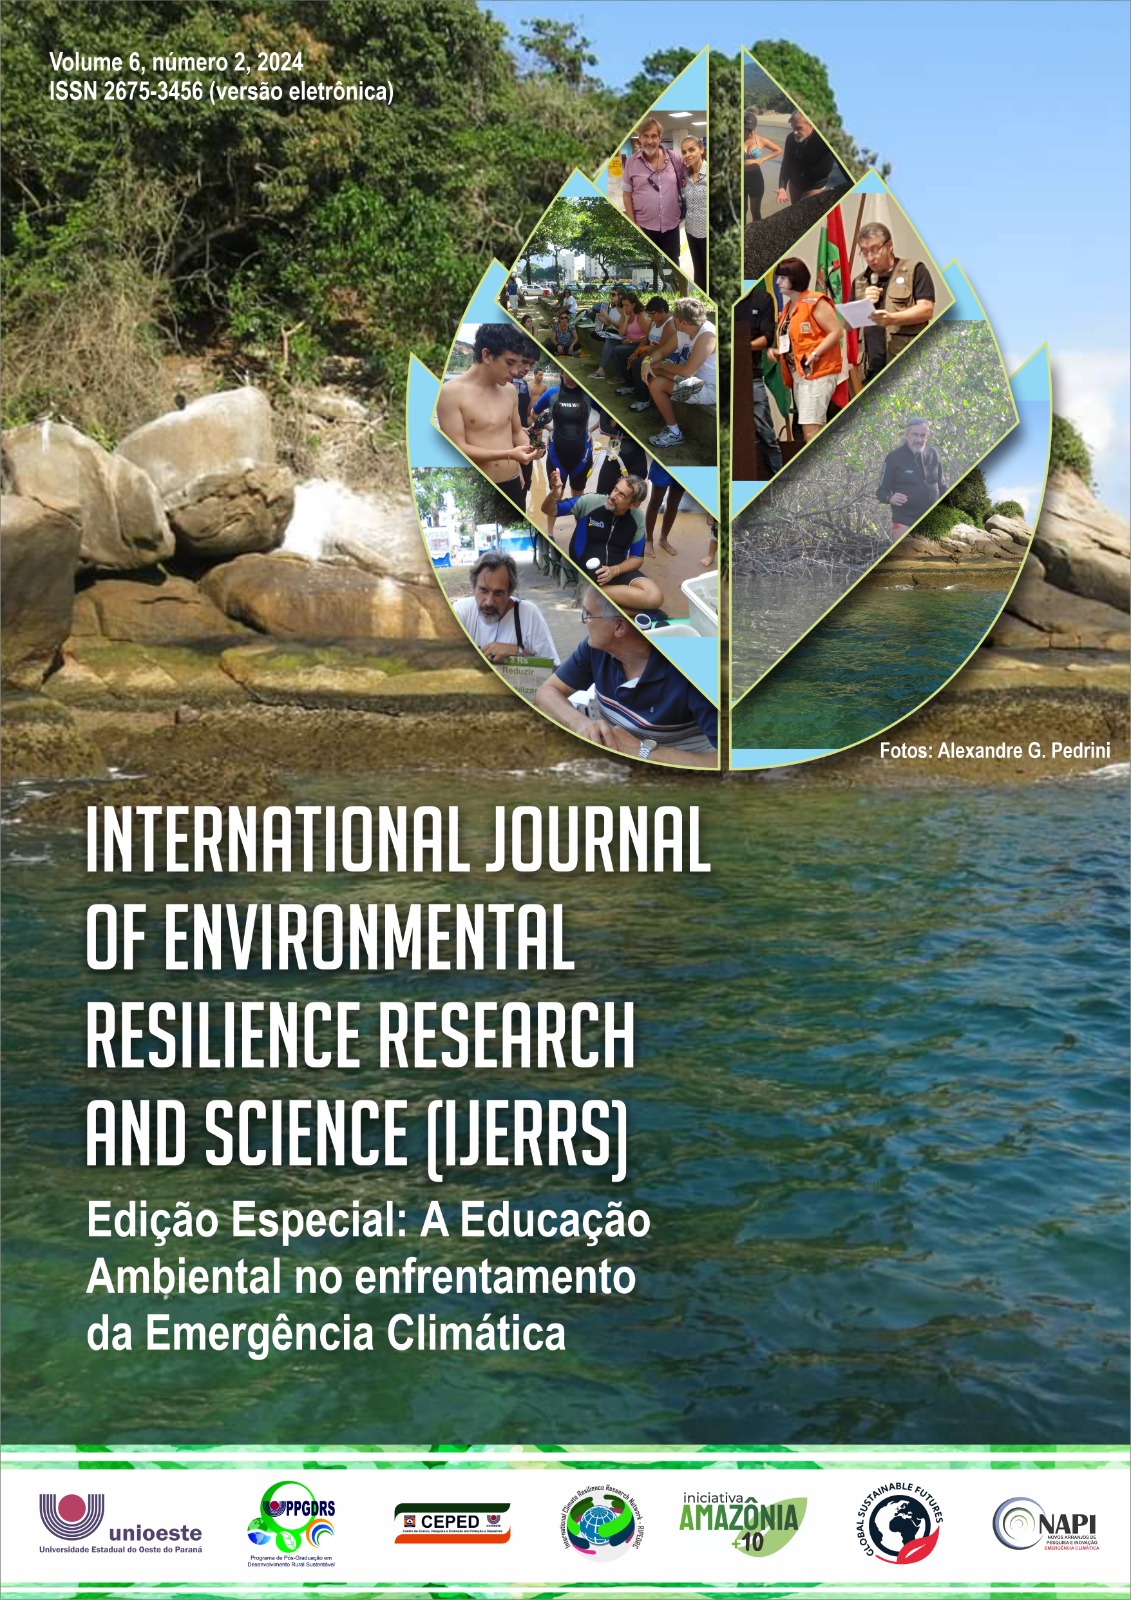 					Afficher Vol. 6 No. 2 (2024): EDIÇÃO ESPECIAL - Educação Ambiental frente à Emergência Climática
				